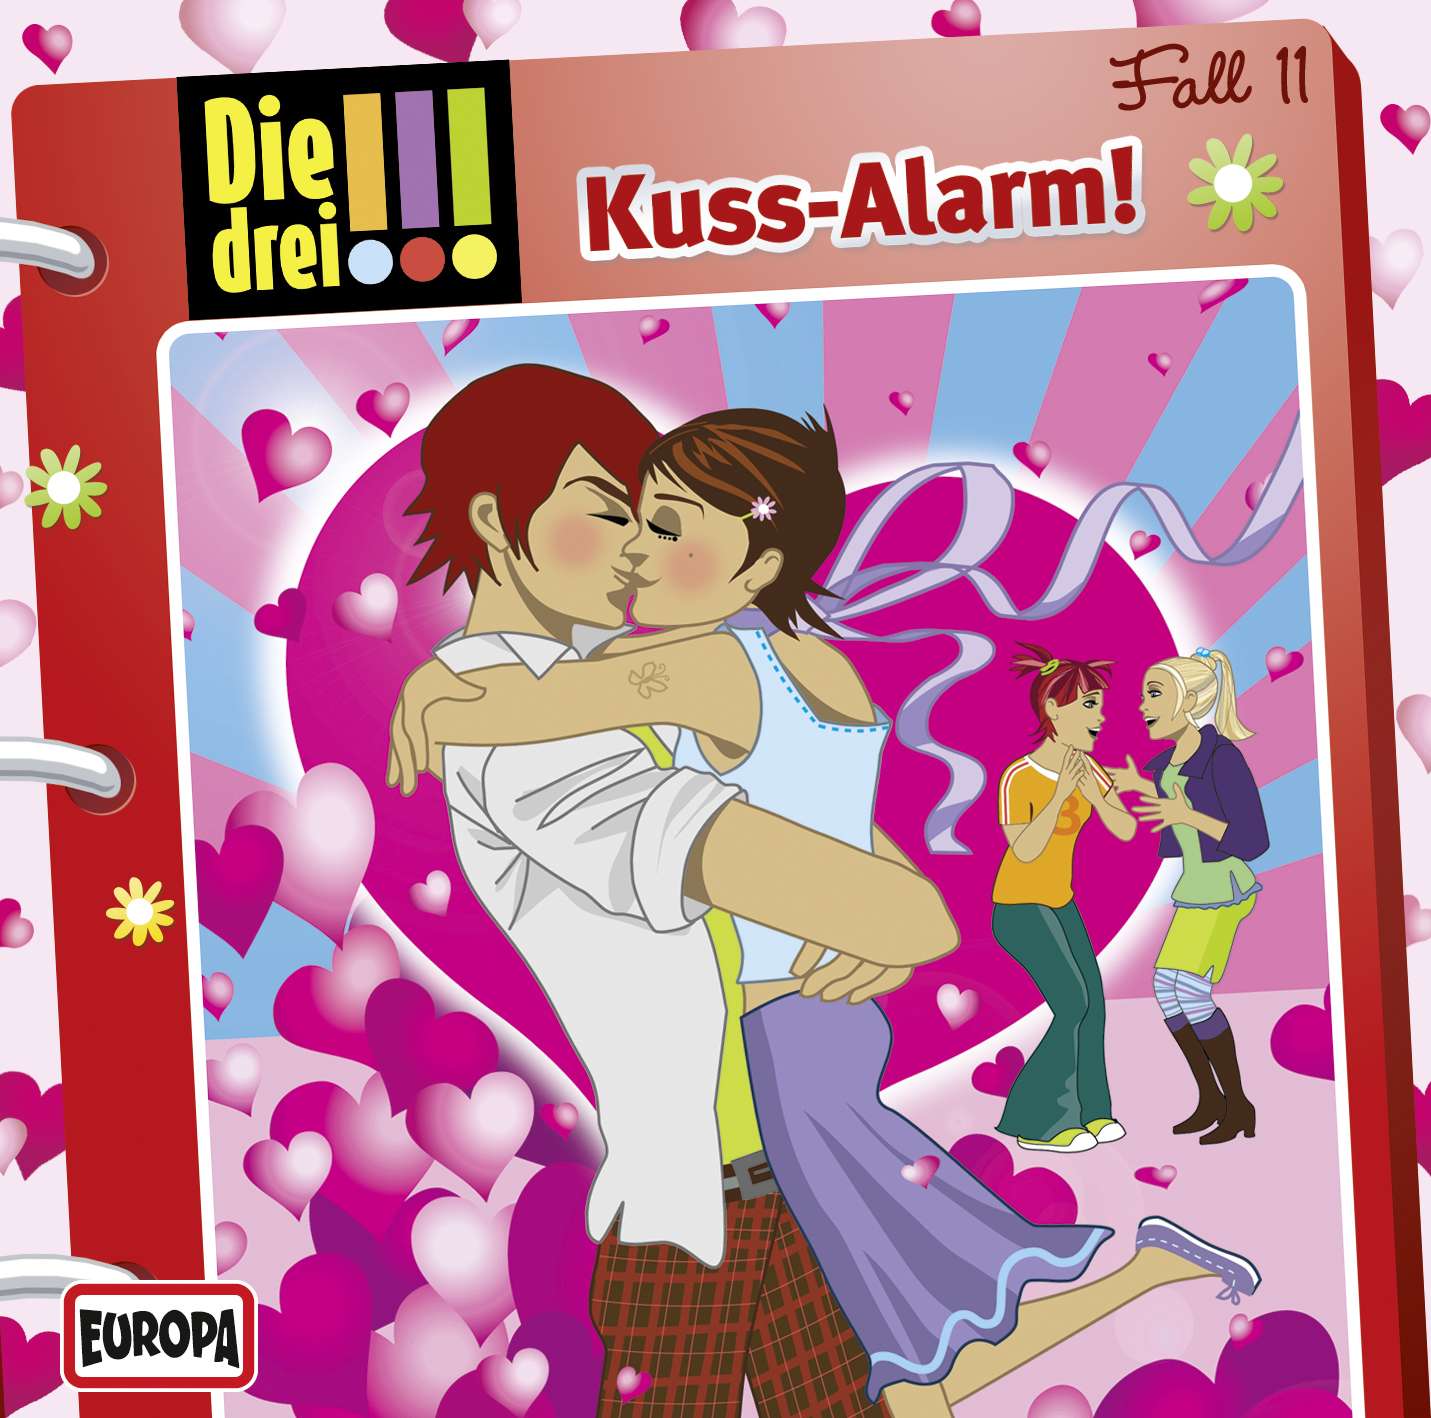 Die drei !!!: Kuss-Alarm